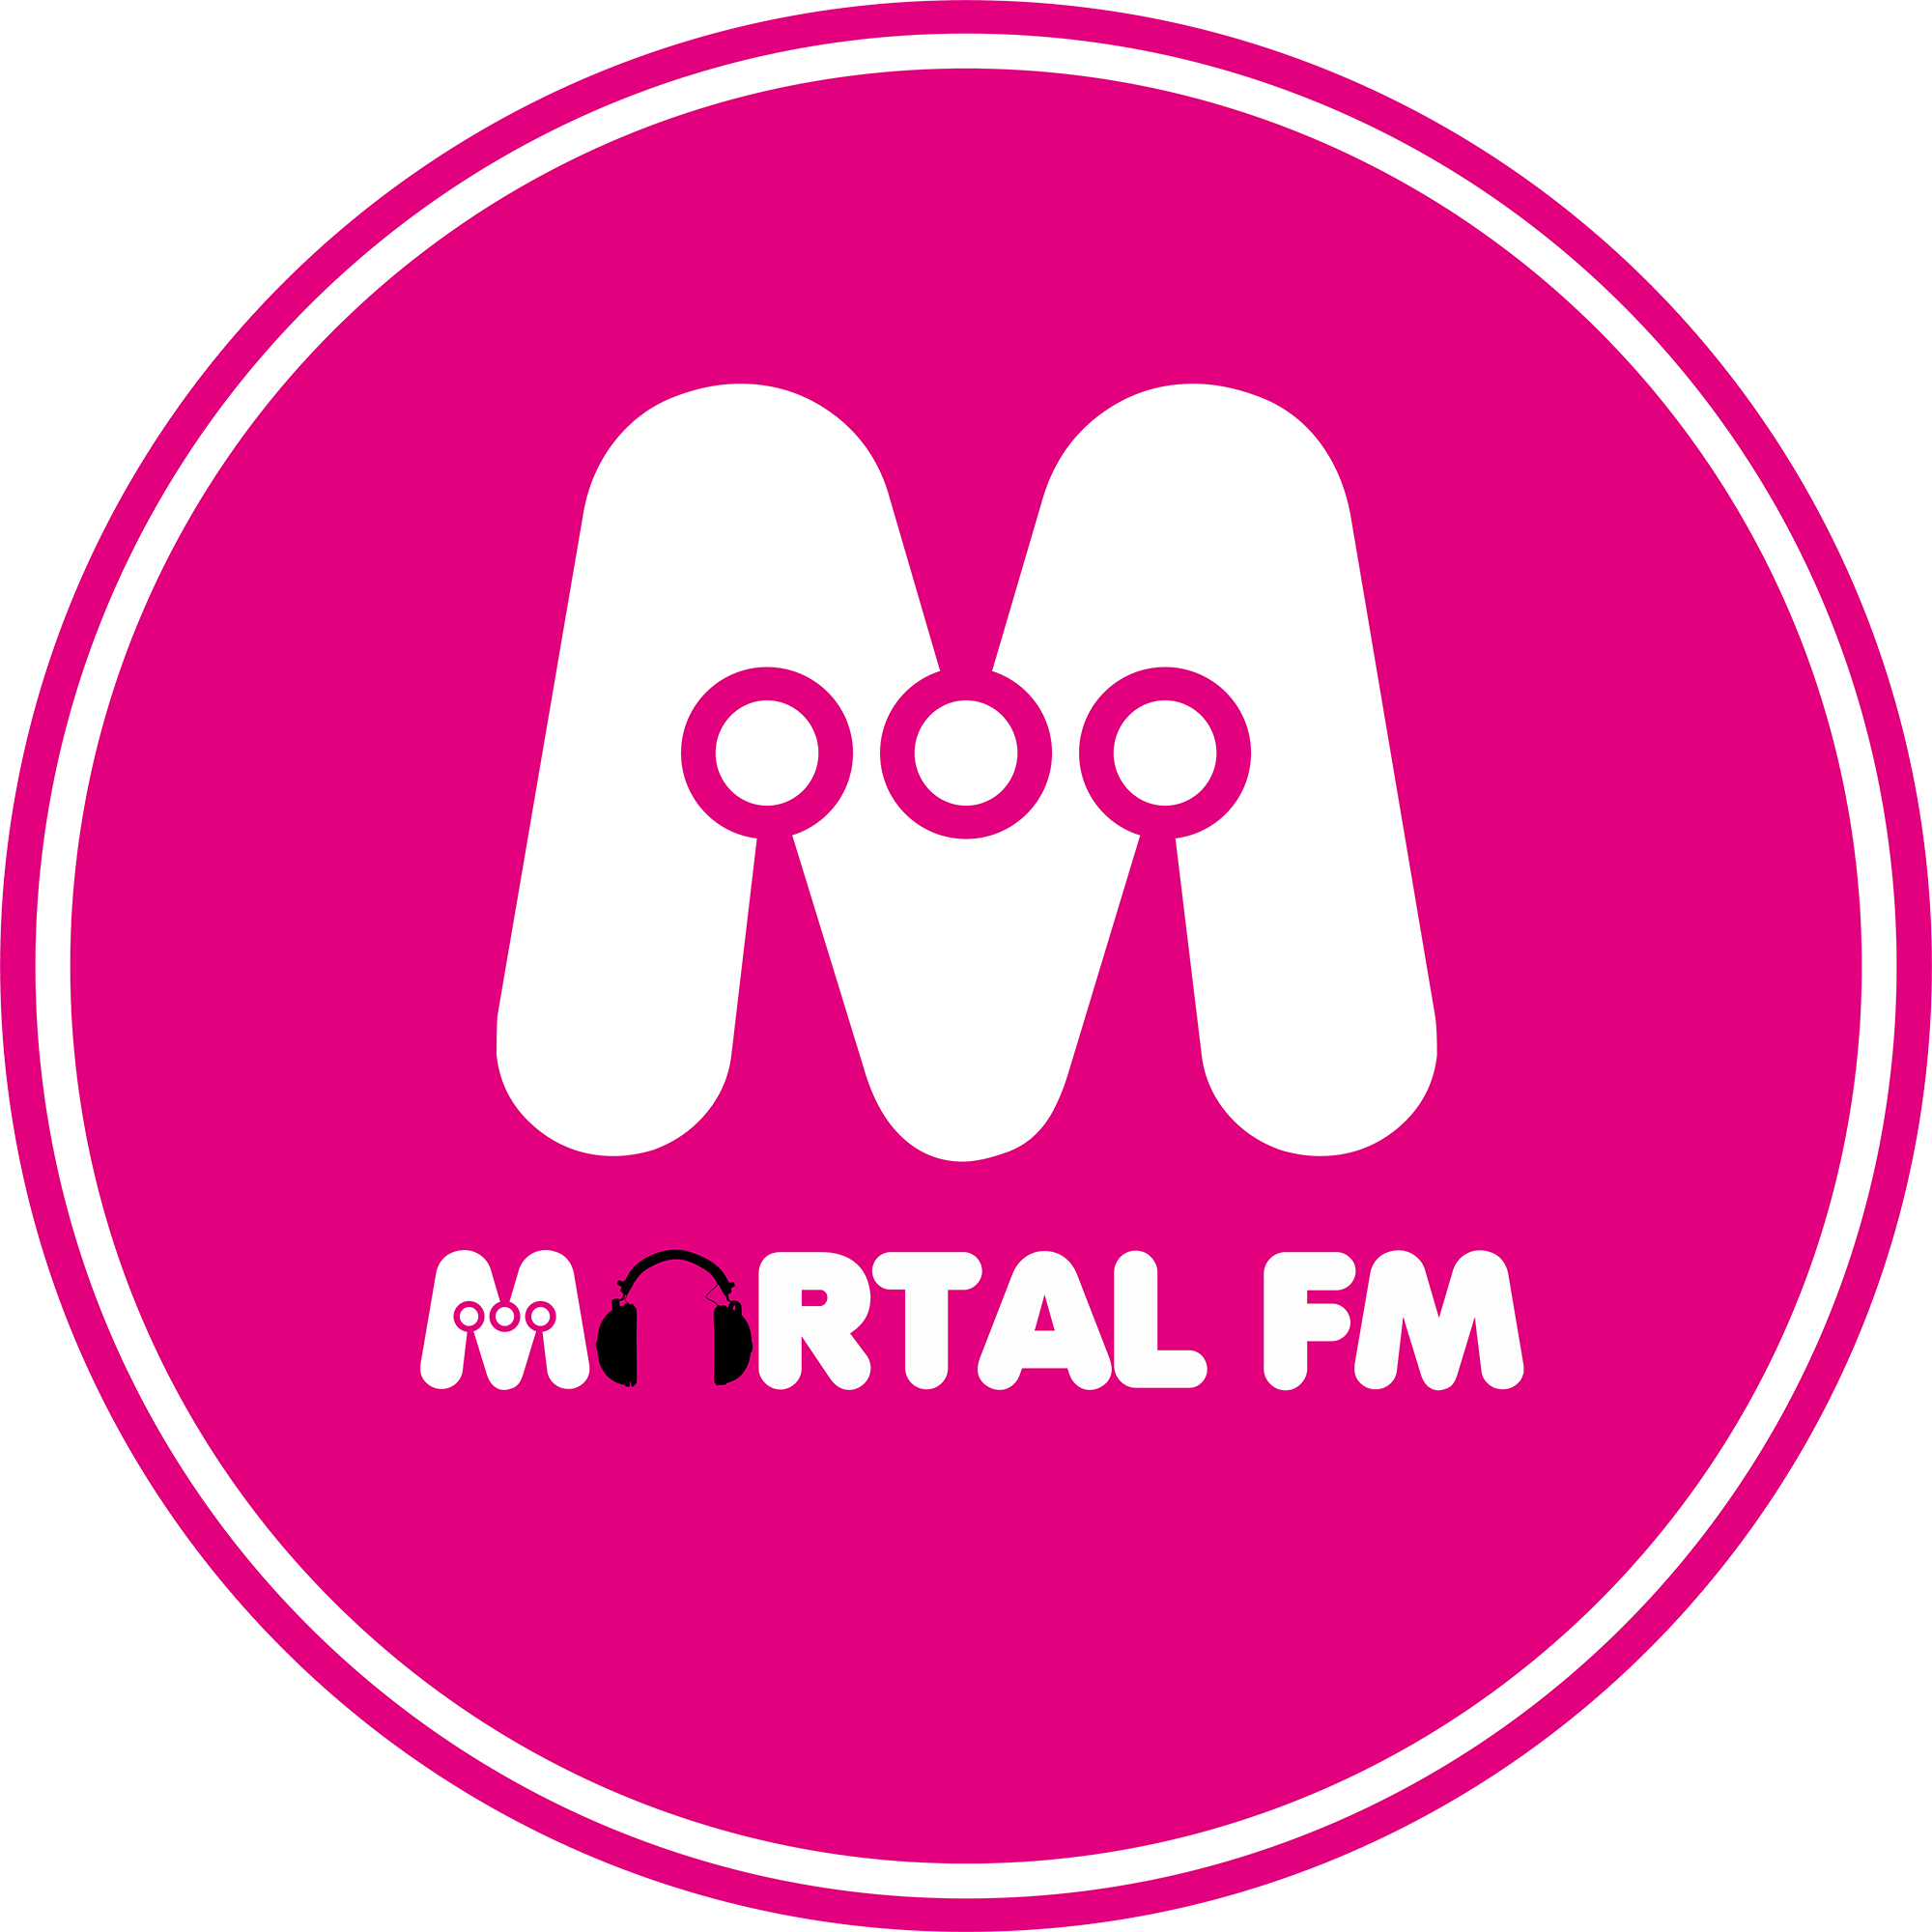 Mortal FM